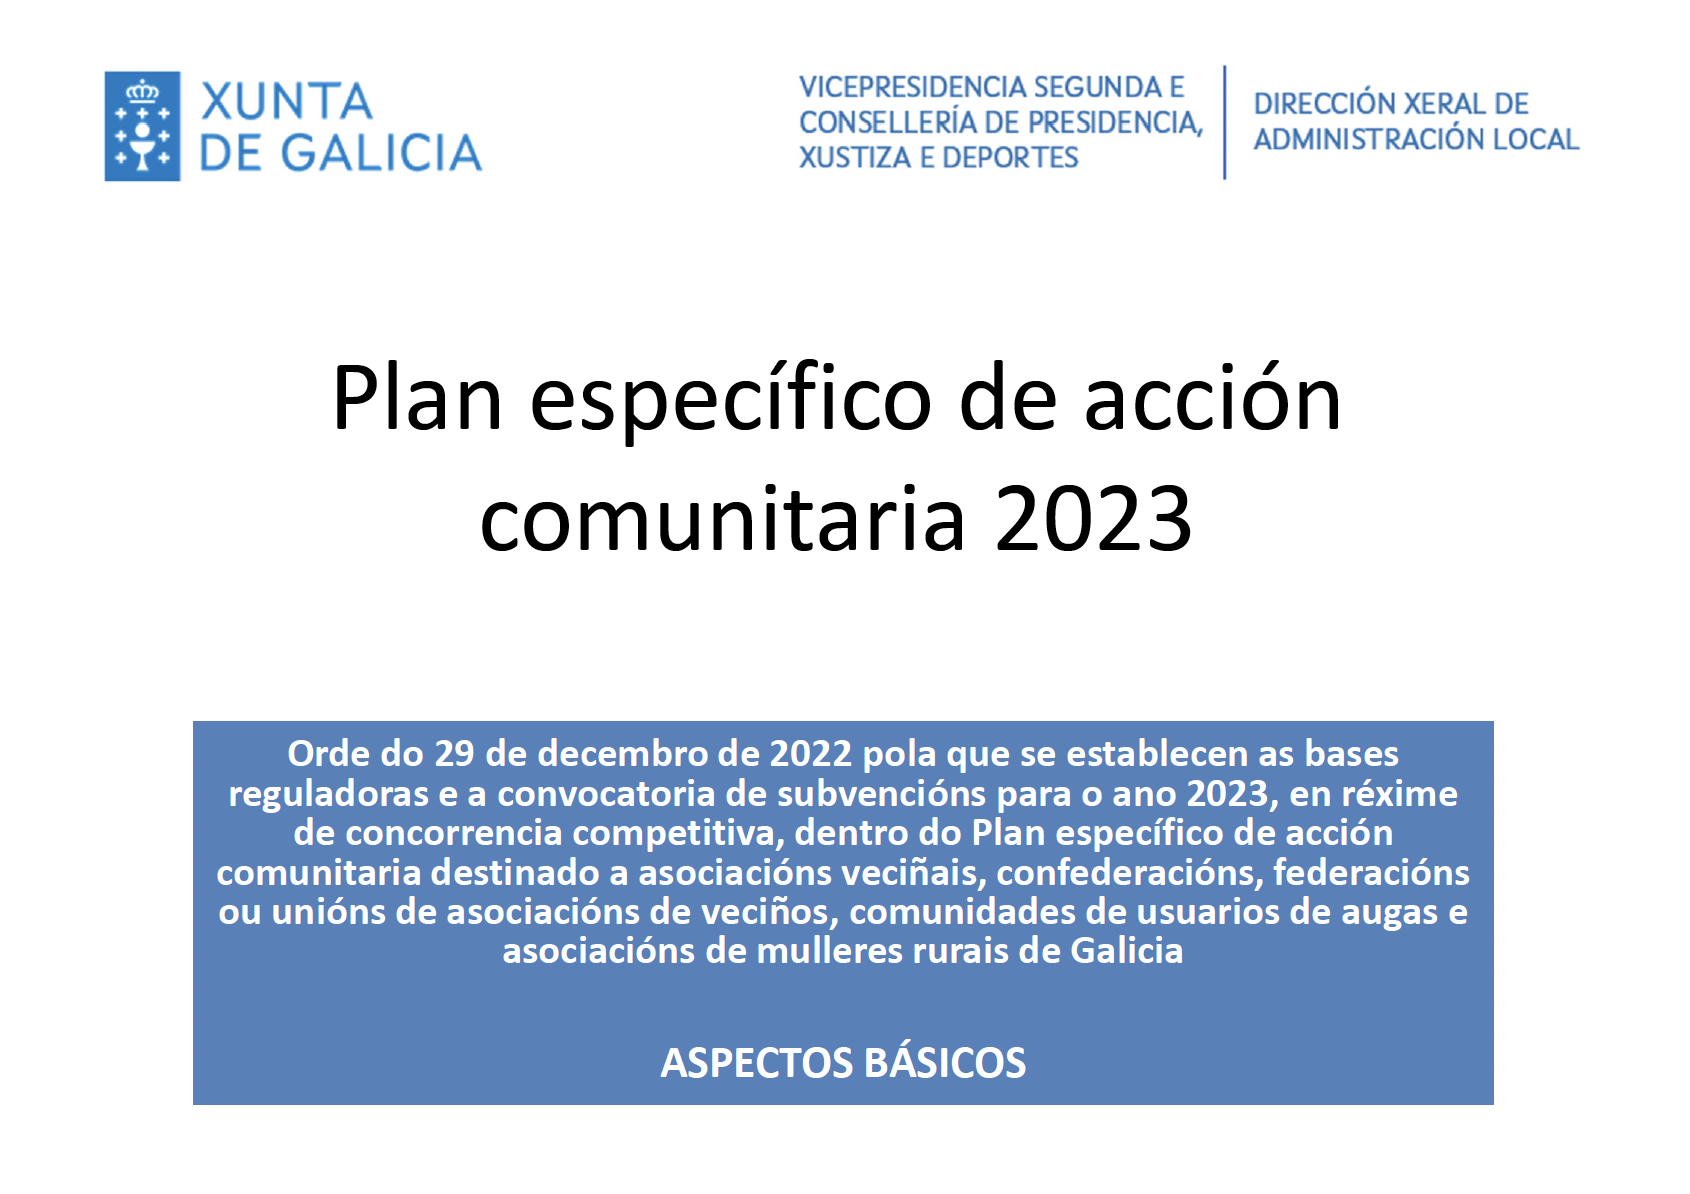 PLAN ESPECÍFICO DE ACCIÓN COMUNITARIA 2023 